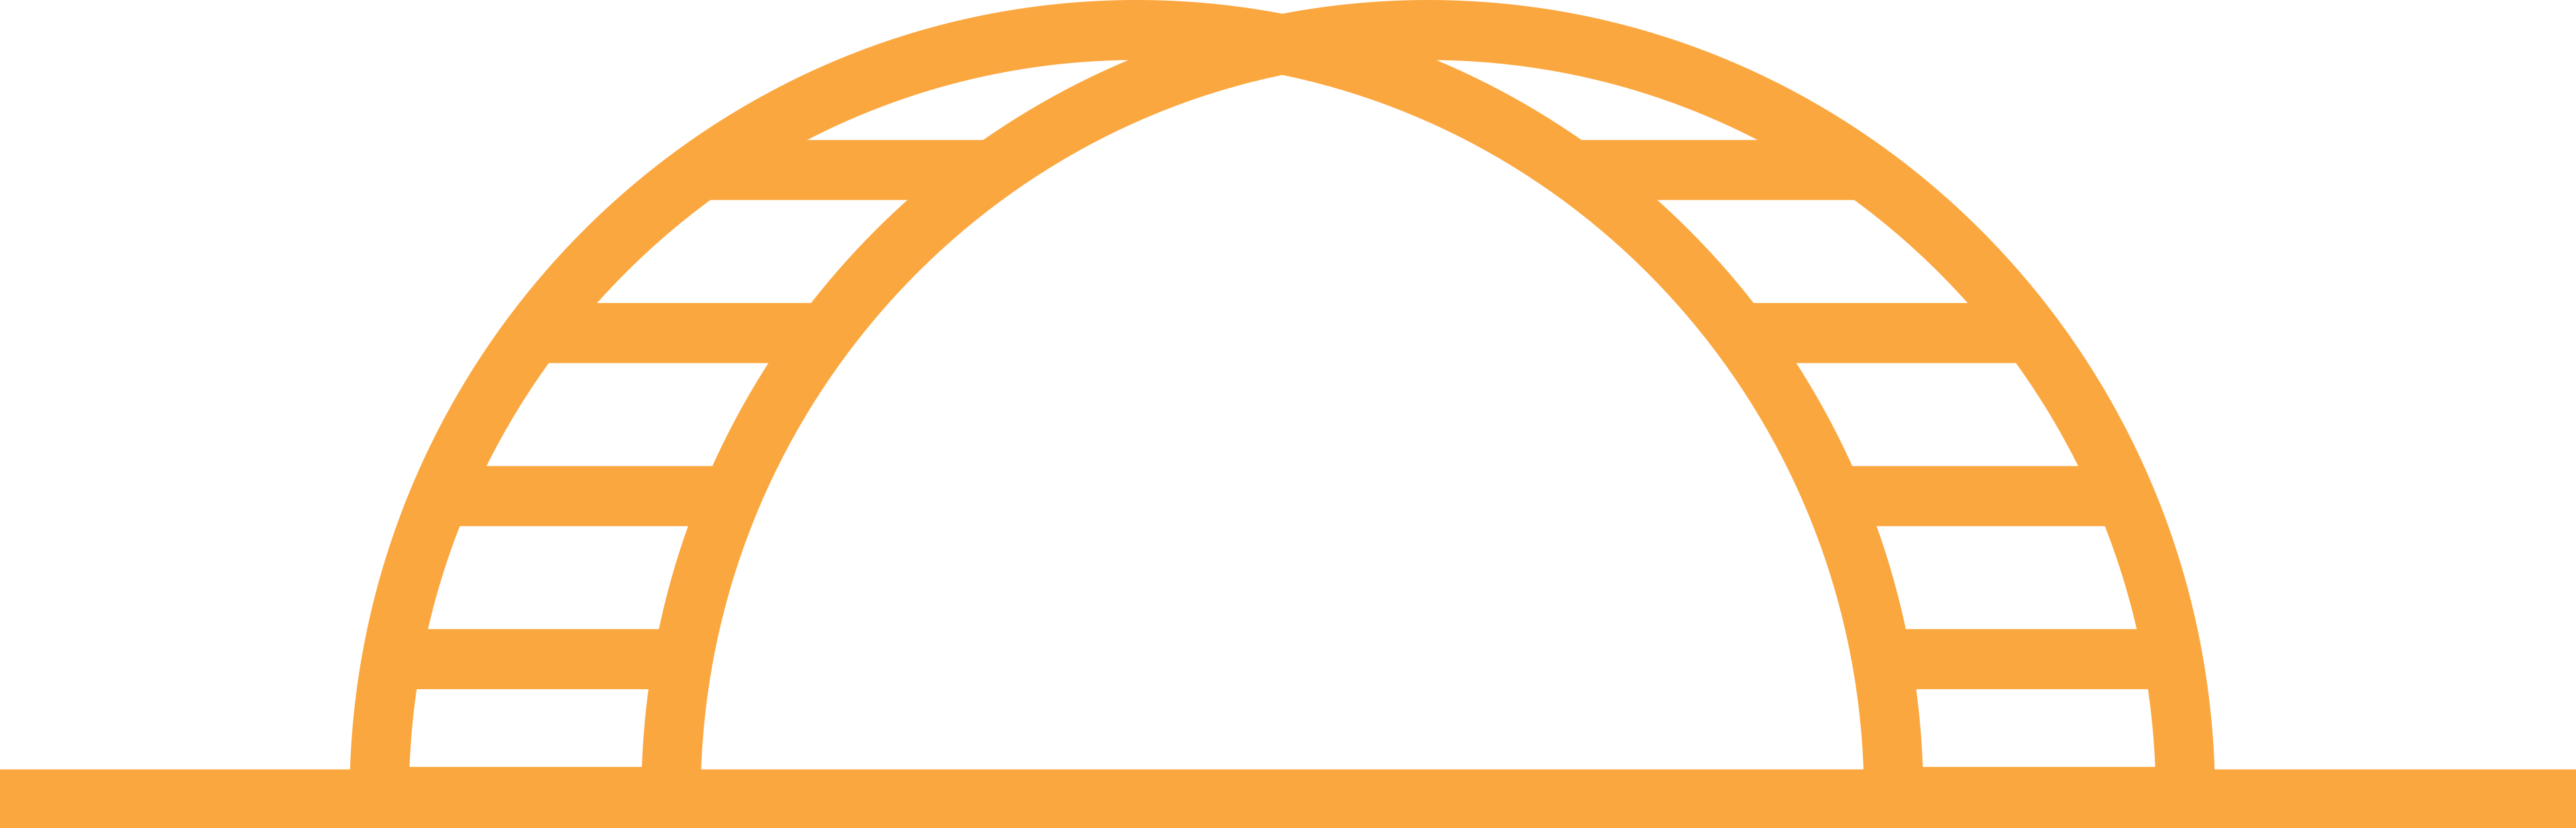 Stylized orange bridge icon